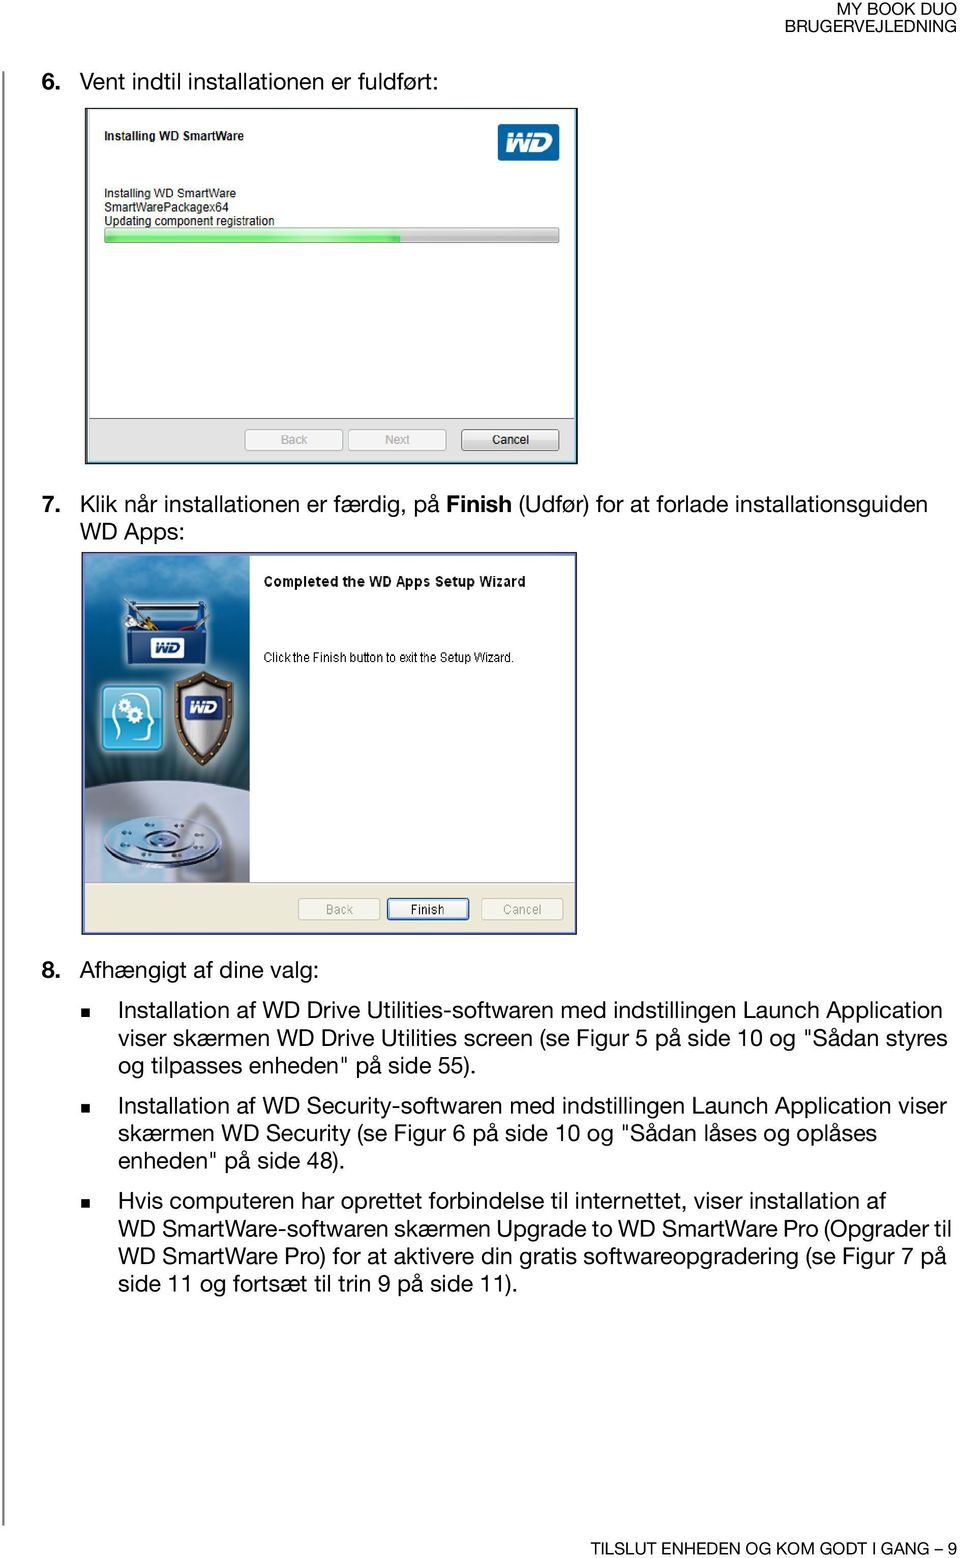 enheden" på side 55). Installation af WD Security-softwaren med indstillingen Launch Application viser skærmen WD Security (se Figur 6 på side 10 og "Sådan låses og oplåses enheden" på side 48).